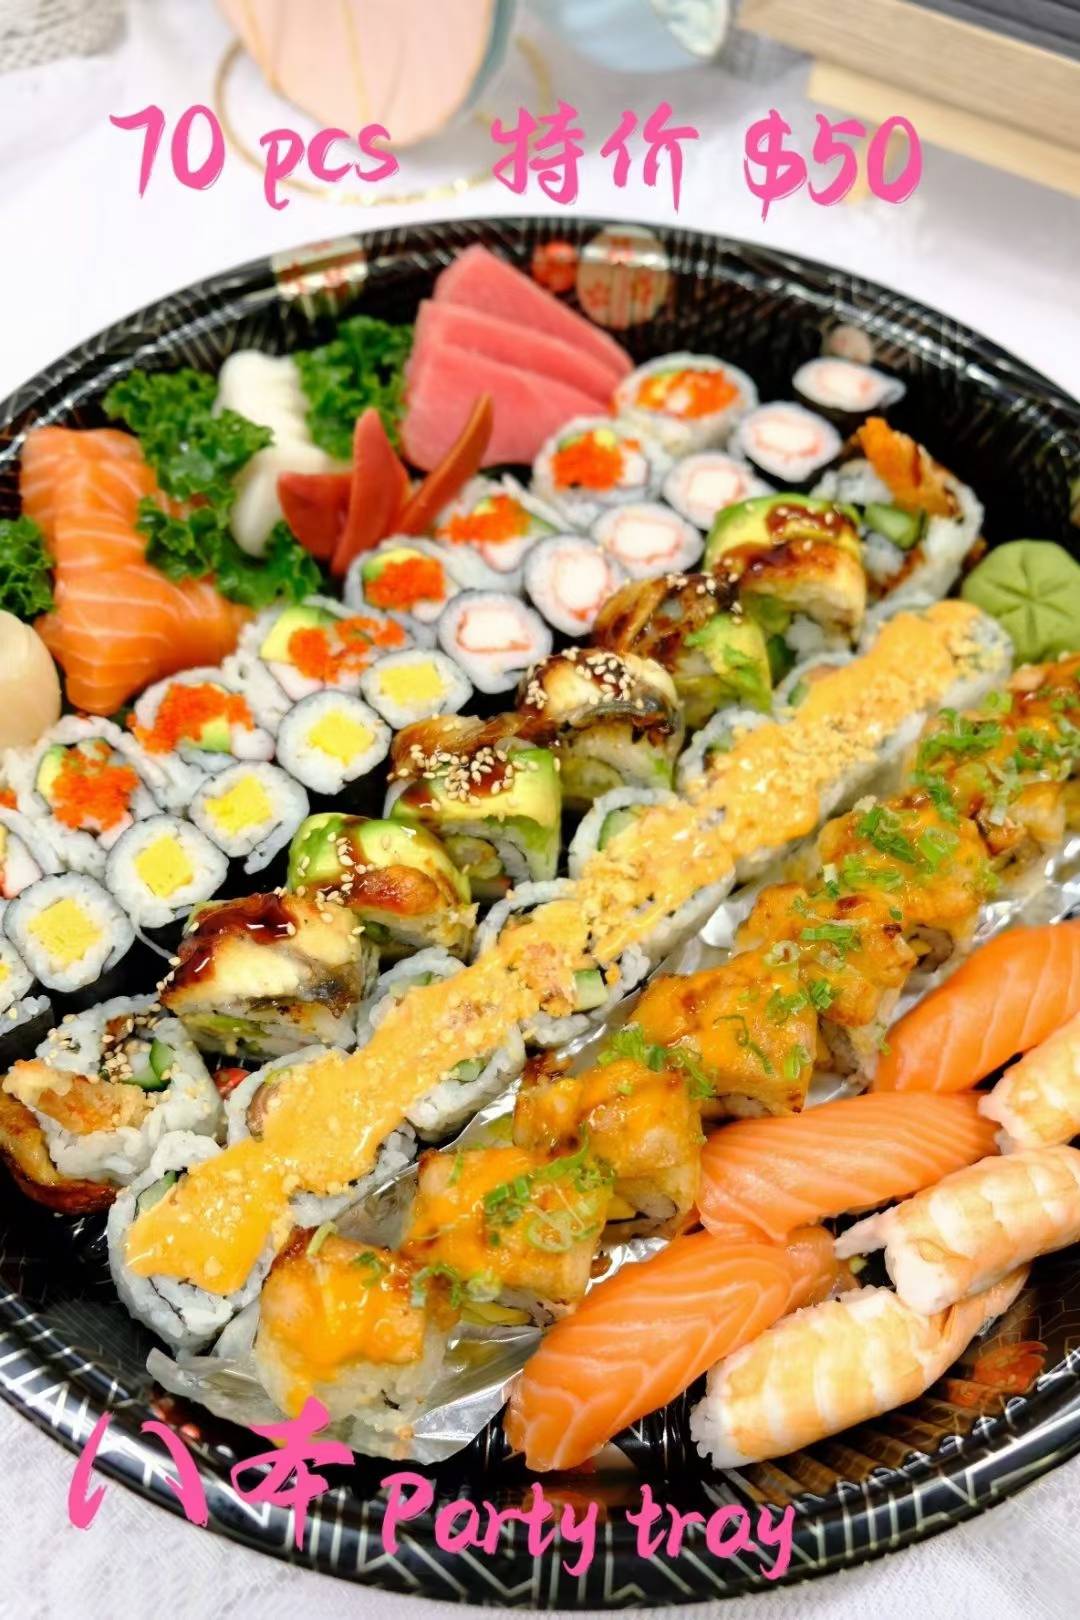 八本寿司baben Sushi Bestfood Today Toronto